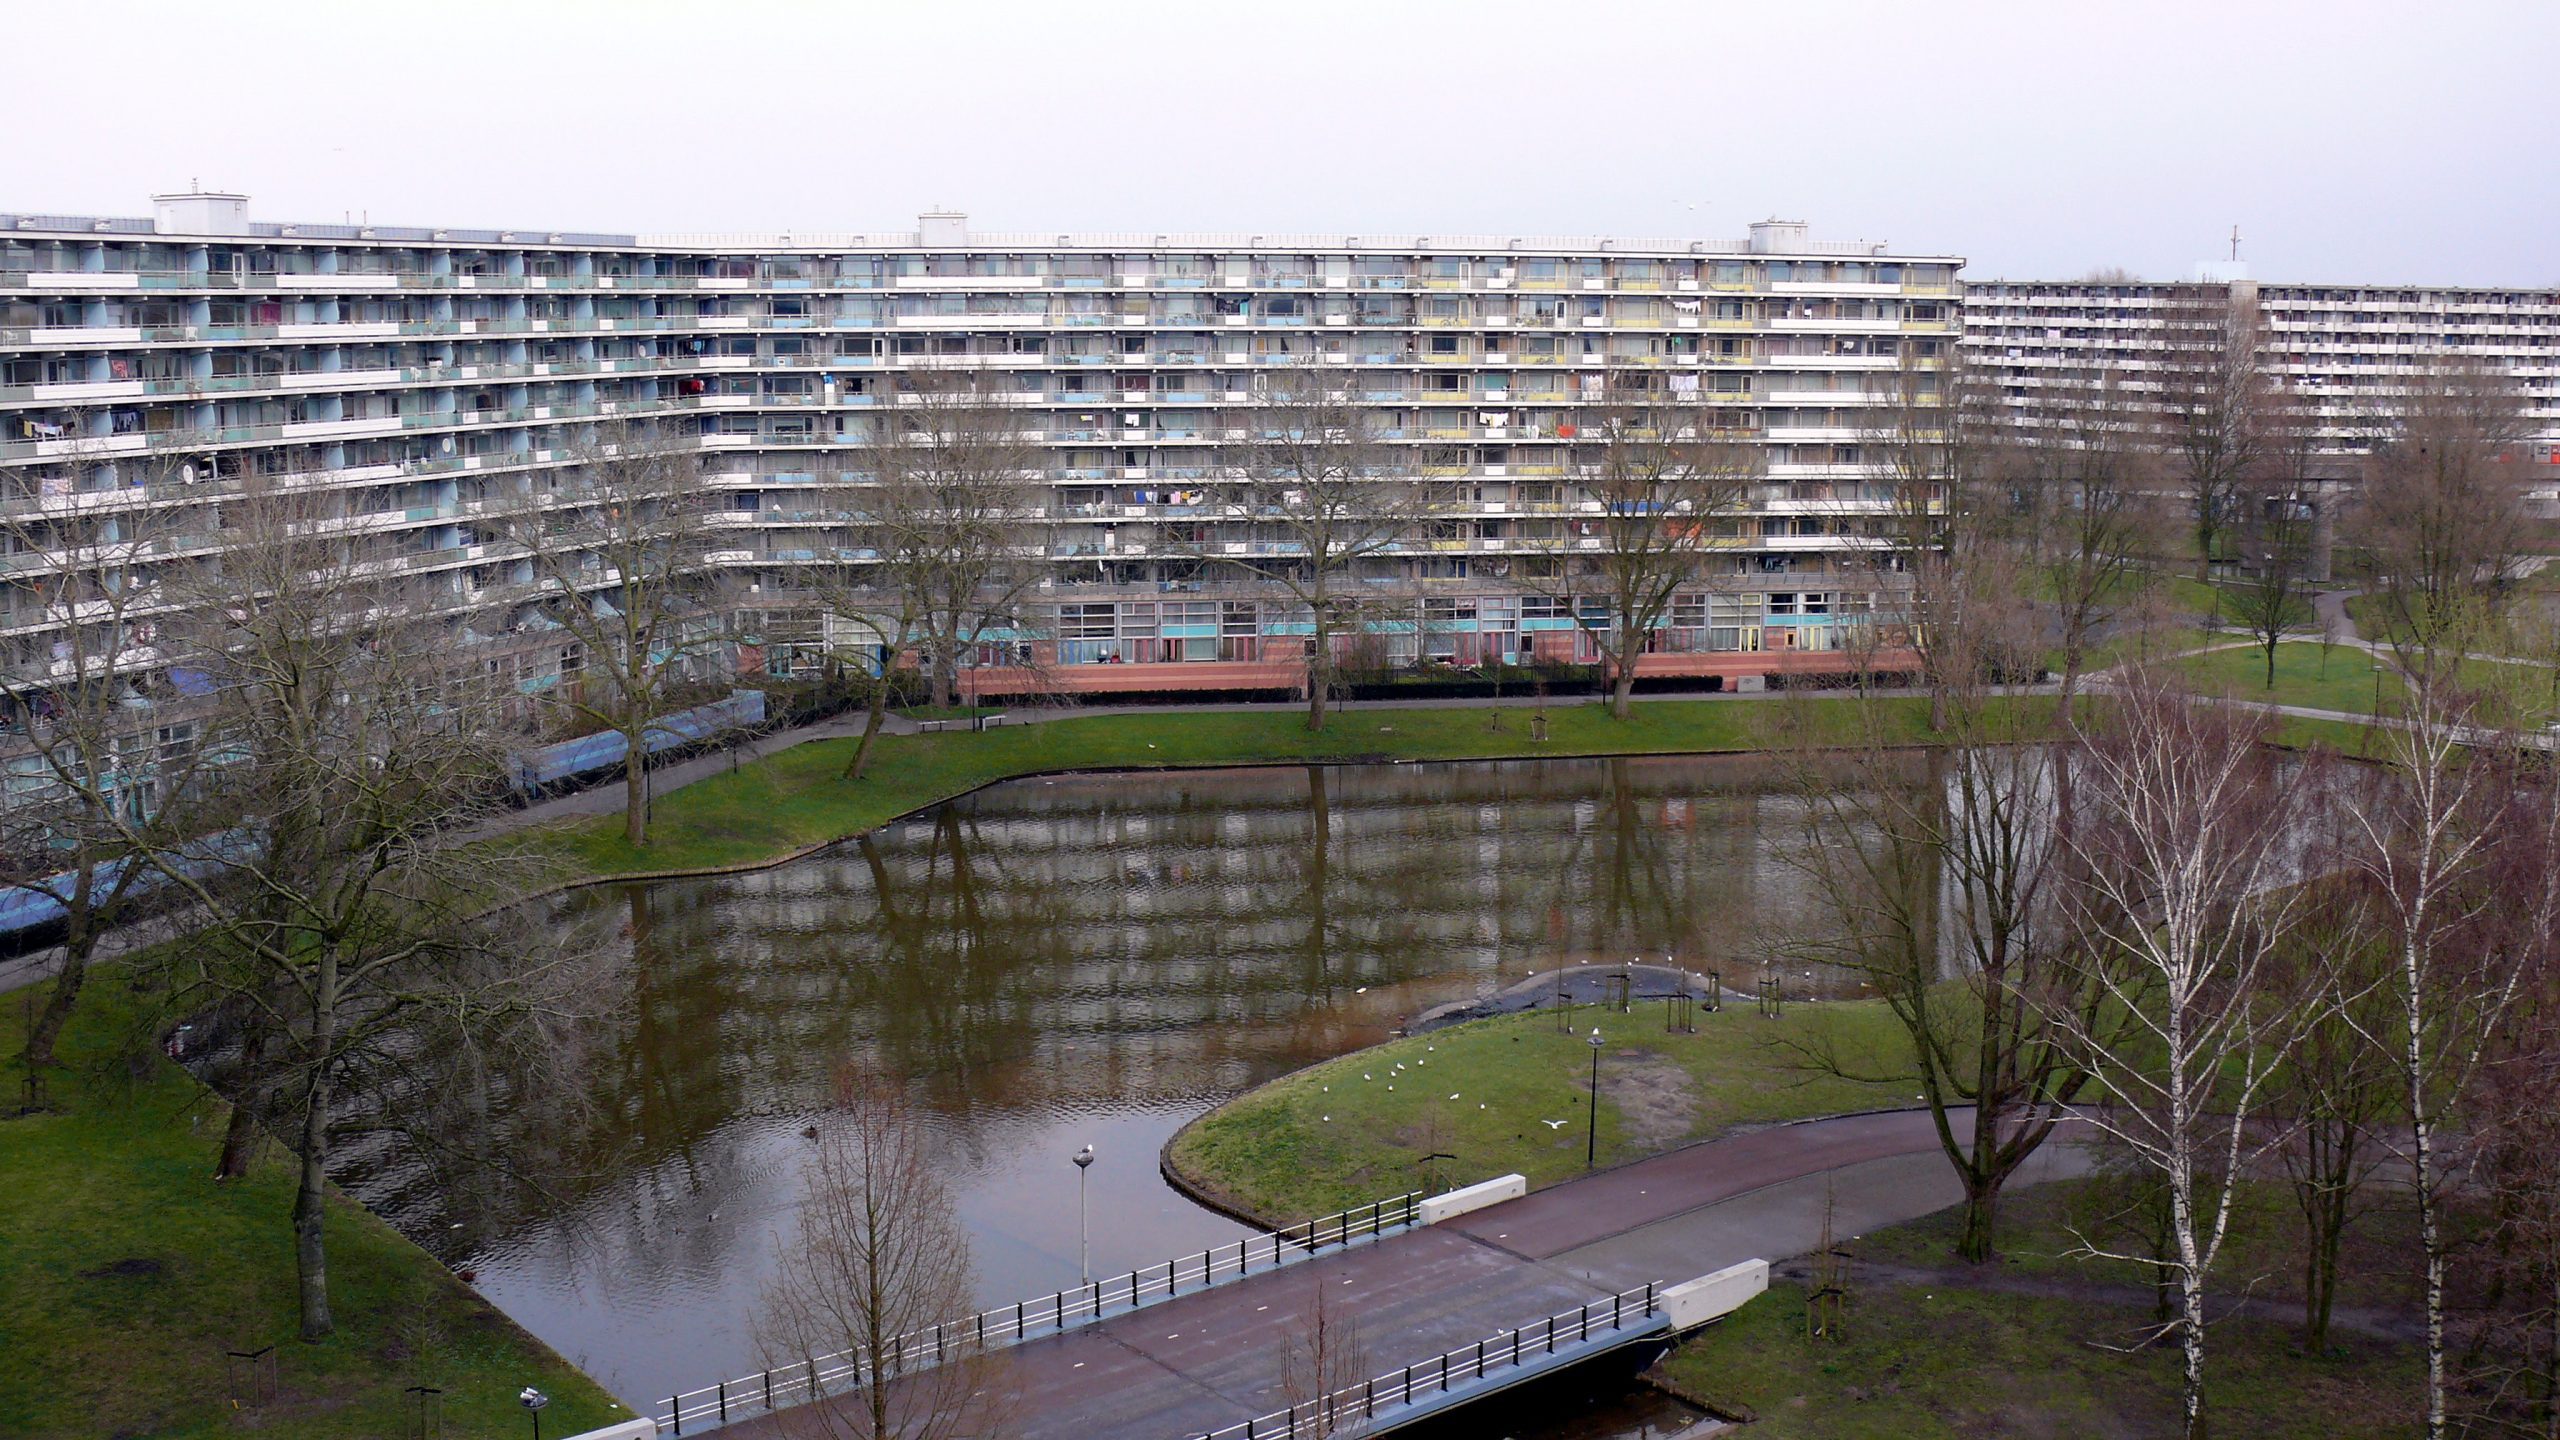 Bijlmermeer Amsterdam South East